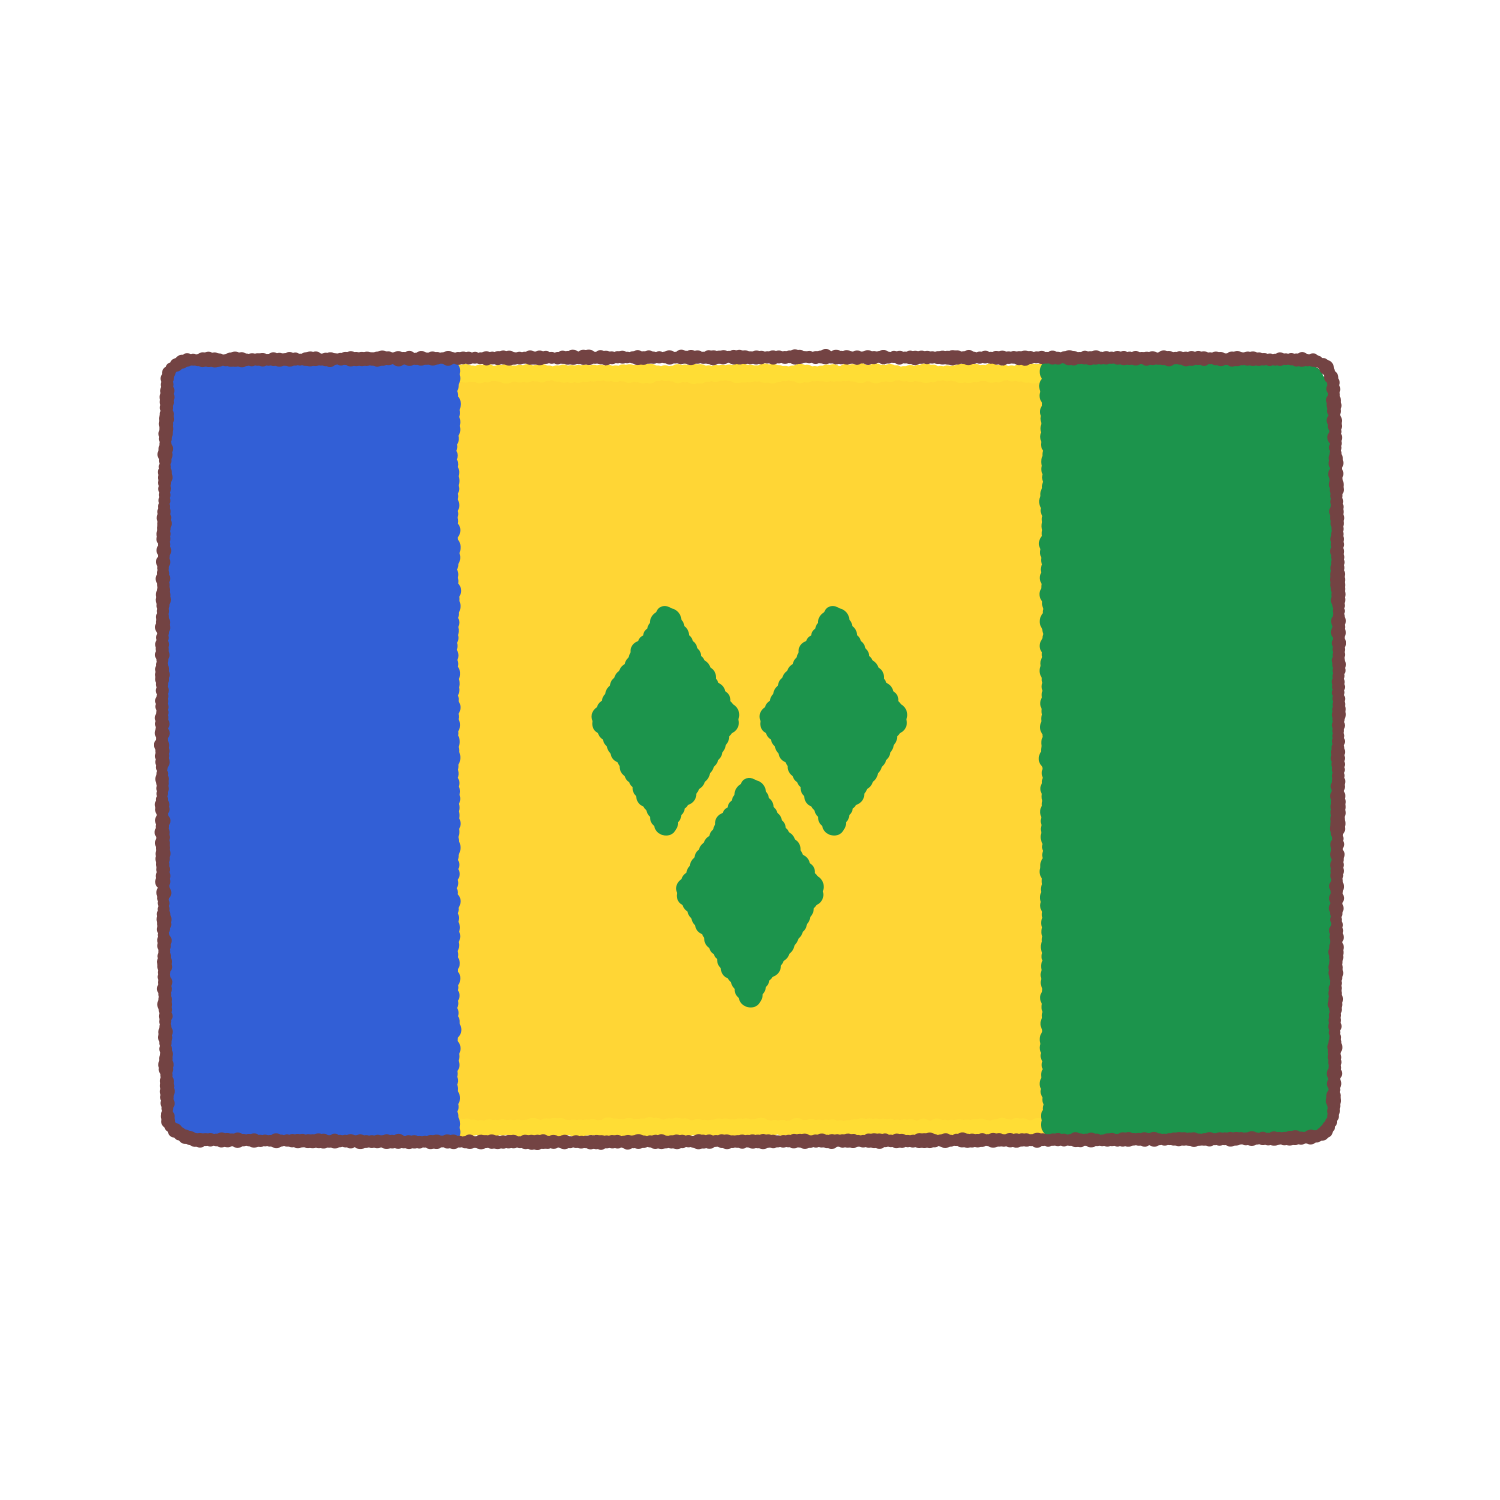 セントビンセント・グレナディーン諸島国旗のイラスト